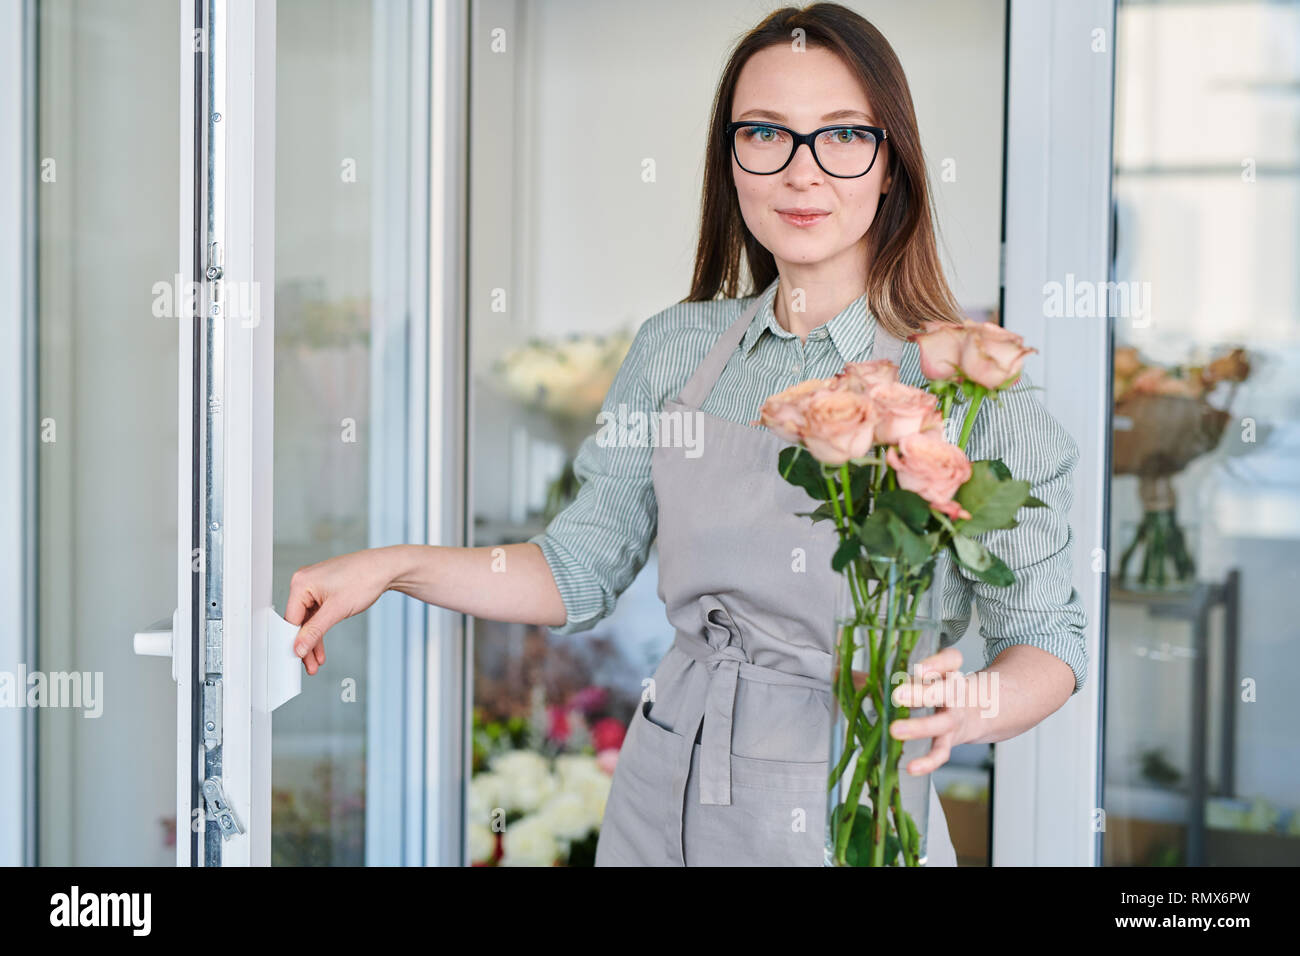 Giovani fioraio di aprire lo sportello del frigorifero mentre porta vaso con mazzo di rose pastello Foto Stock